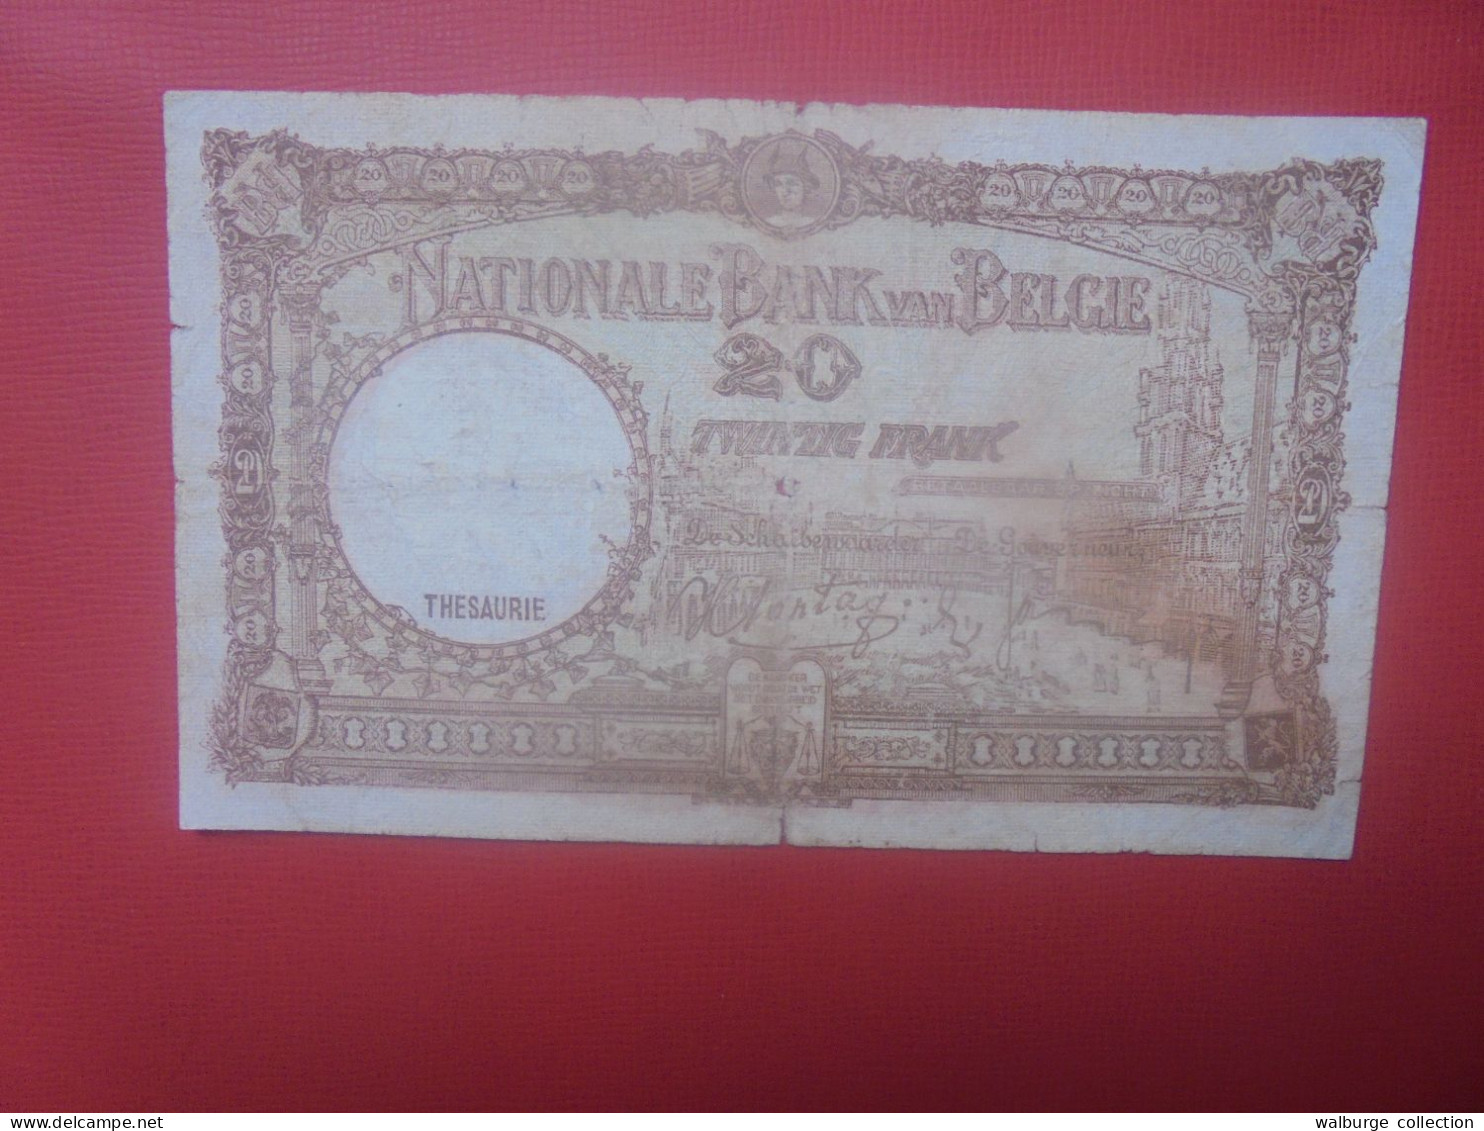 BELGIQUE 20 Francs 10-2-1940 Circuler (B.18) - 20 Francos